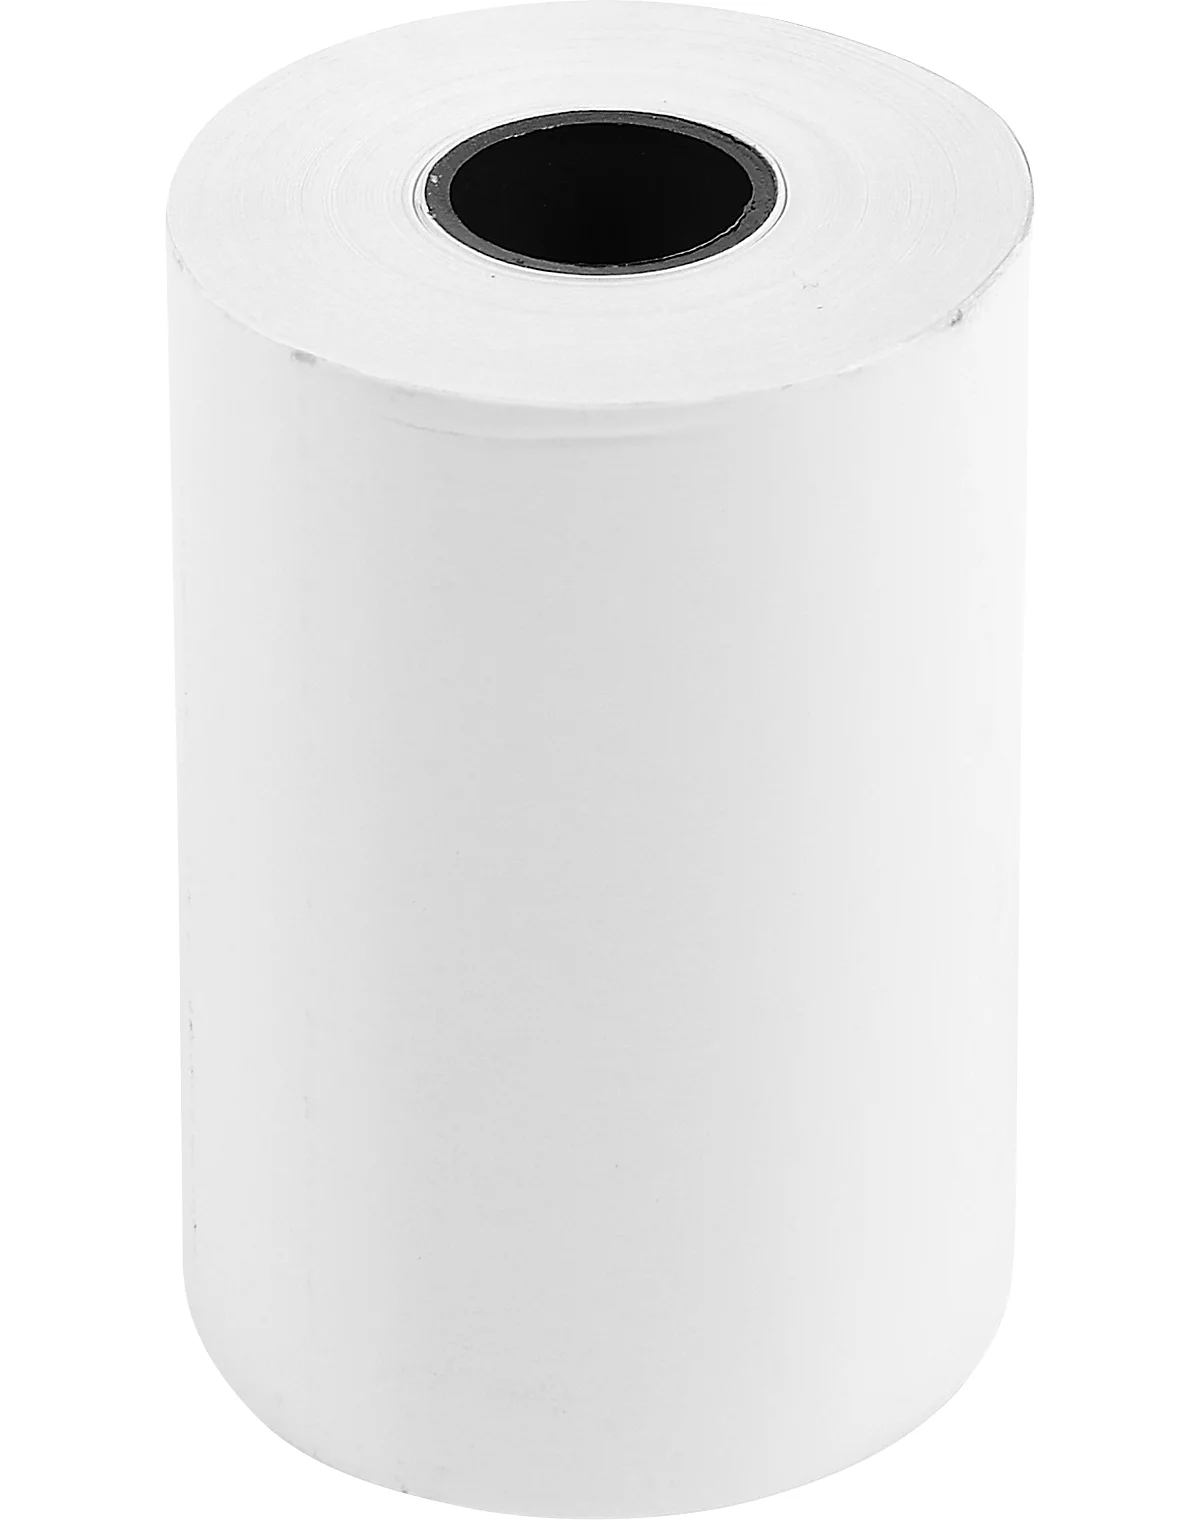 Rouleaux de papier thermique, paquet de 12 - Rouleaux de papier pour reçus  - Caisse enregistreuse de point de vente - Papier pour imprimante thermique  - Carte de crédit